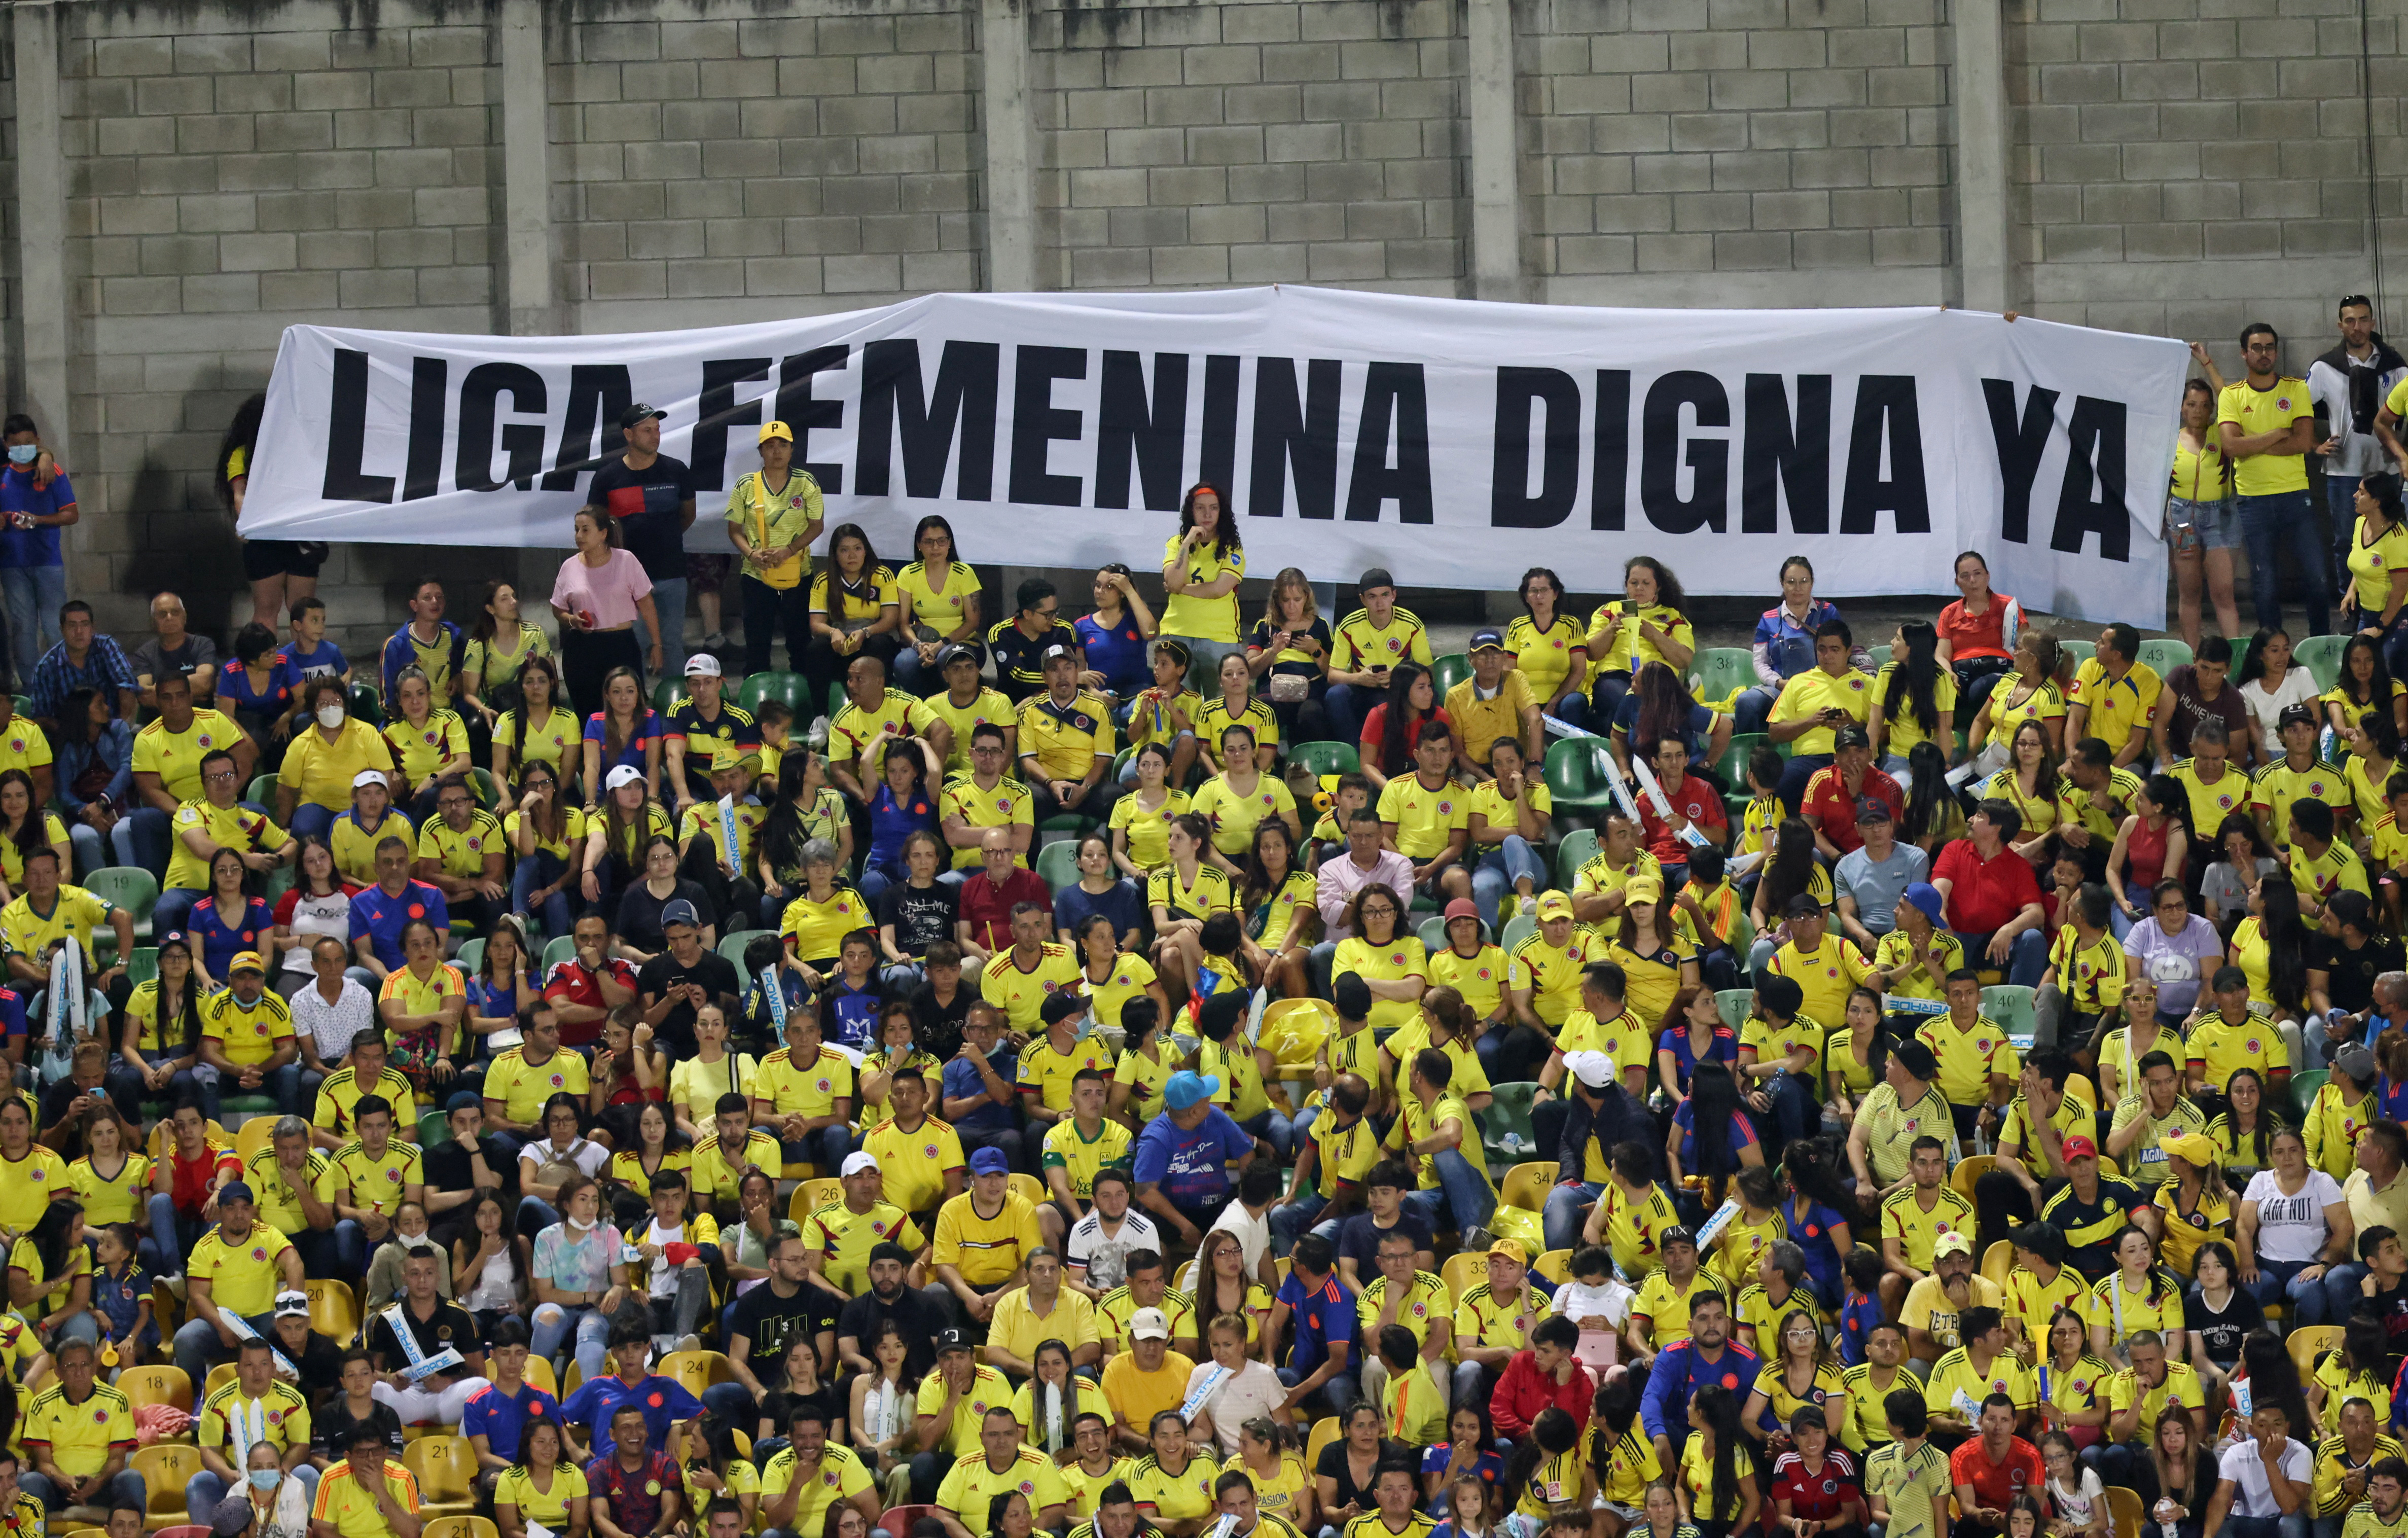 Los hinchas pidieron la realización de una Liga Femenina digna en Colombia en la final de la Copa América. Foto:  REUTERS/Luisa Gonzalez